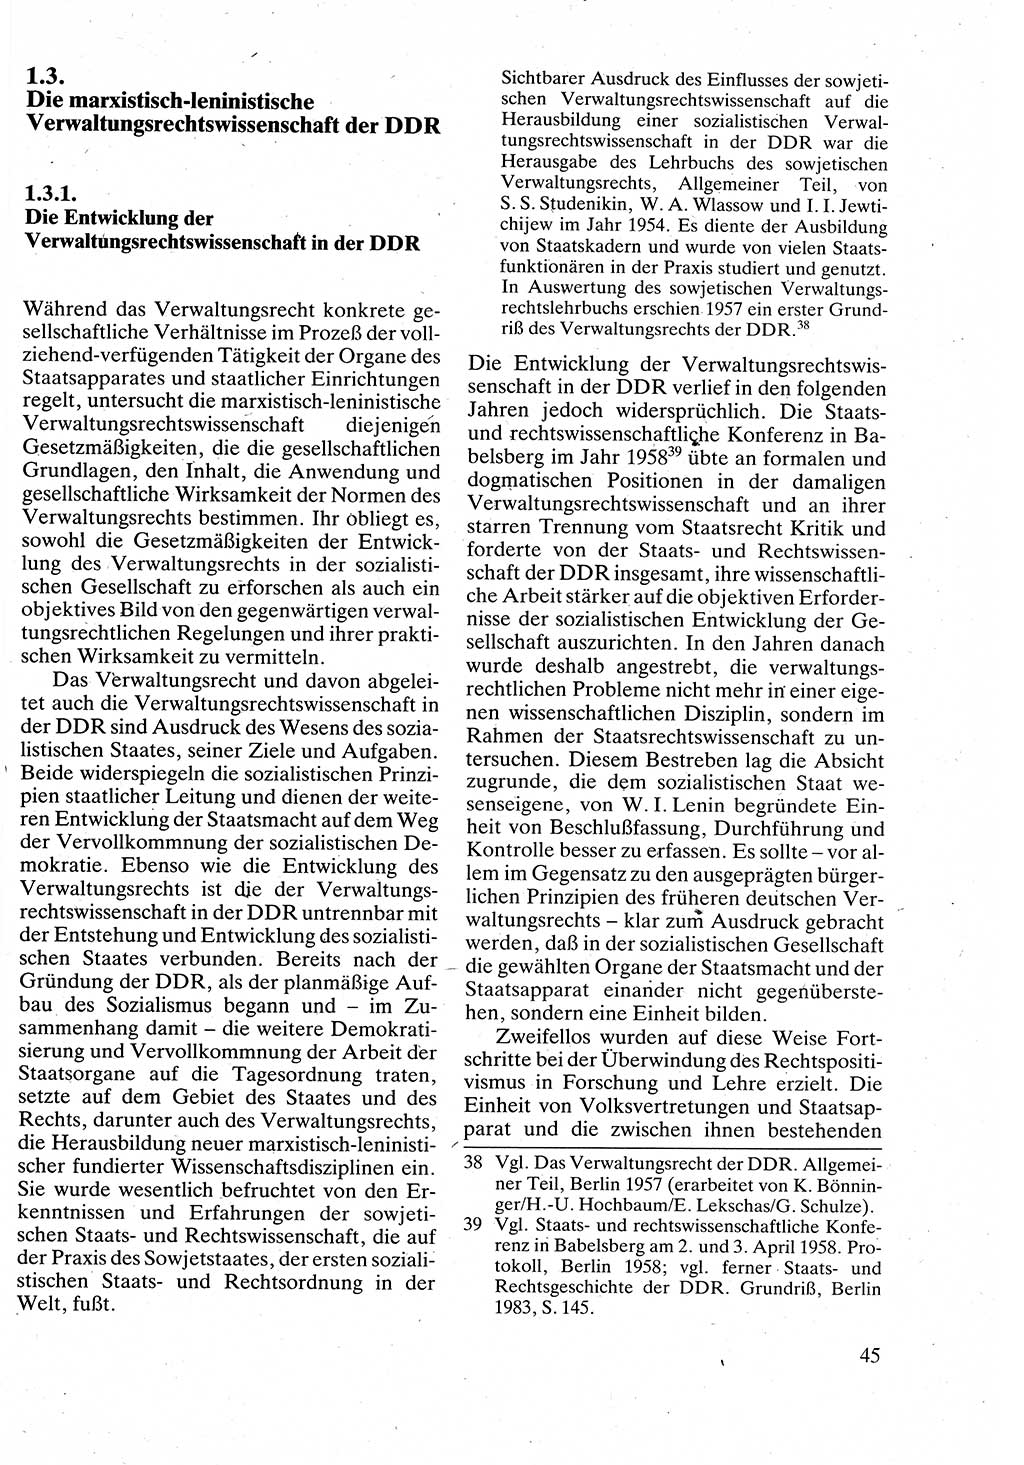 Verwaltungsrecht [Deutsche Demokratische Republik (DDR)], Lehrbuch 1988, Seite 45 (Verw.-R. DDR Lb. 1988, S. 45)